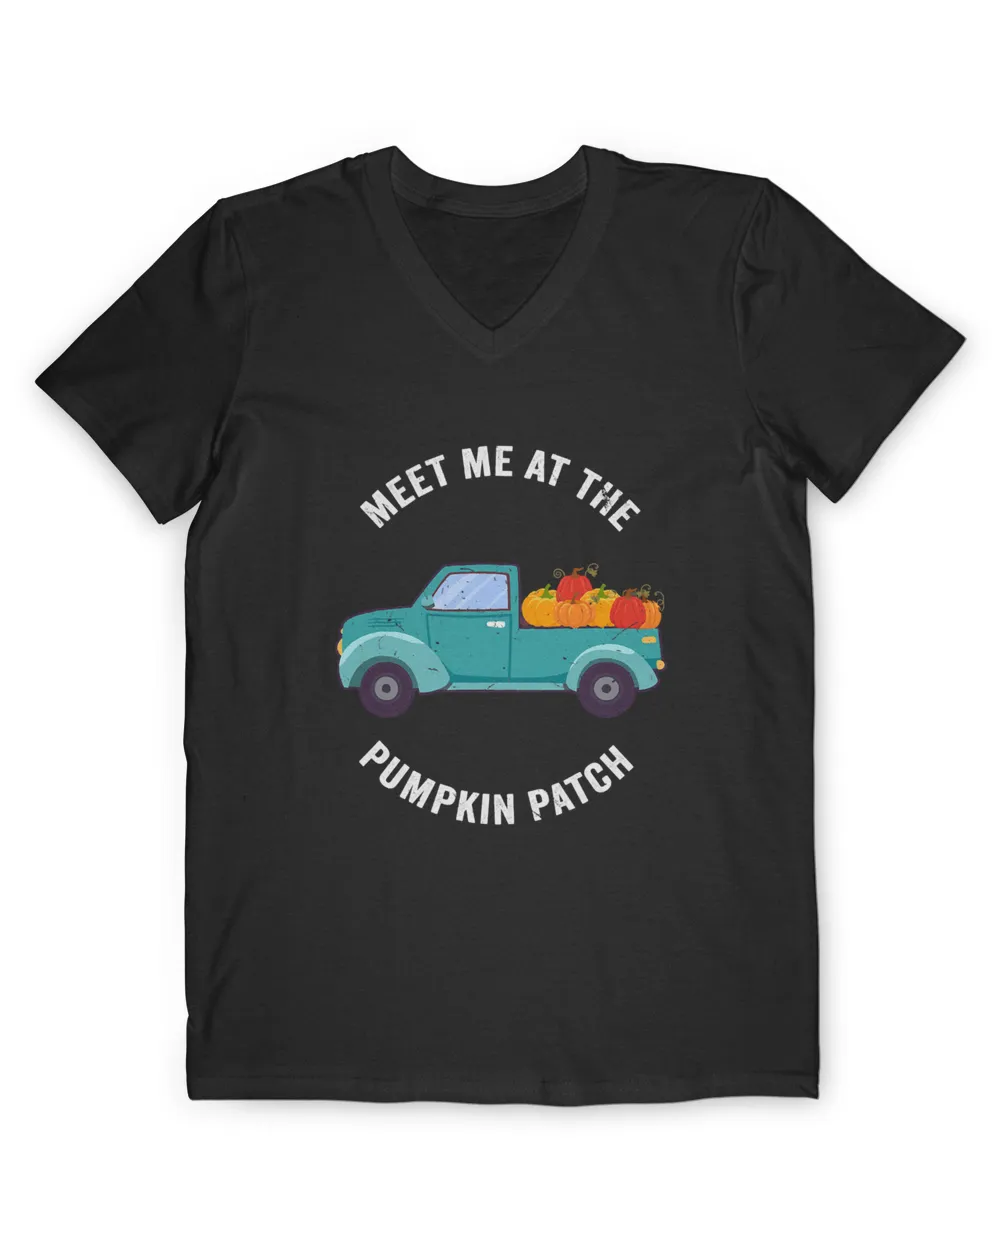 Meet Me At The Pumpkin Patch Pickup Truck T-Shirt